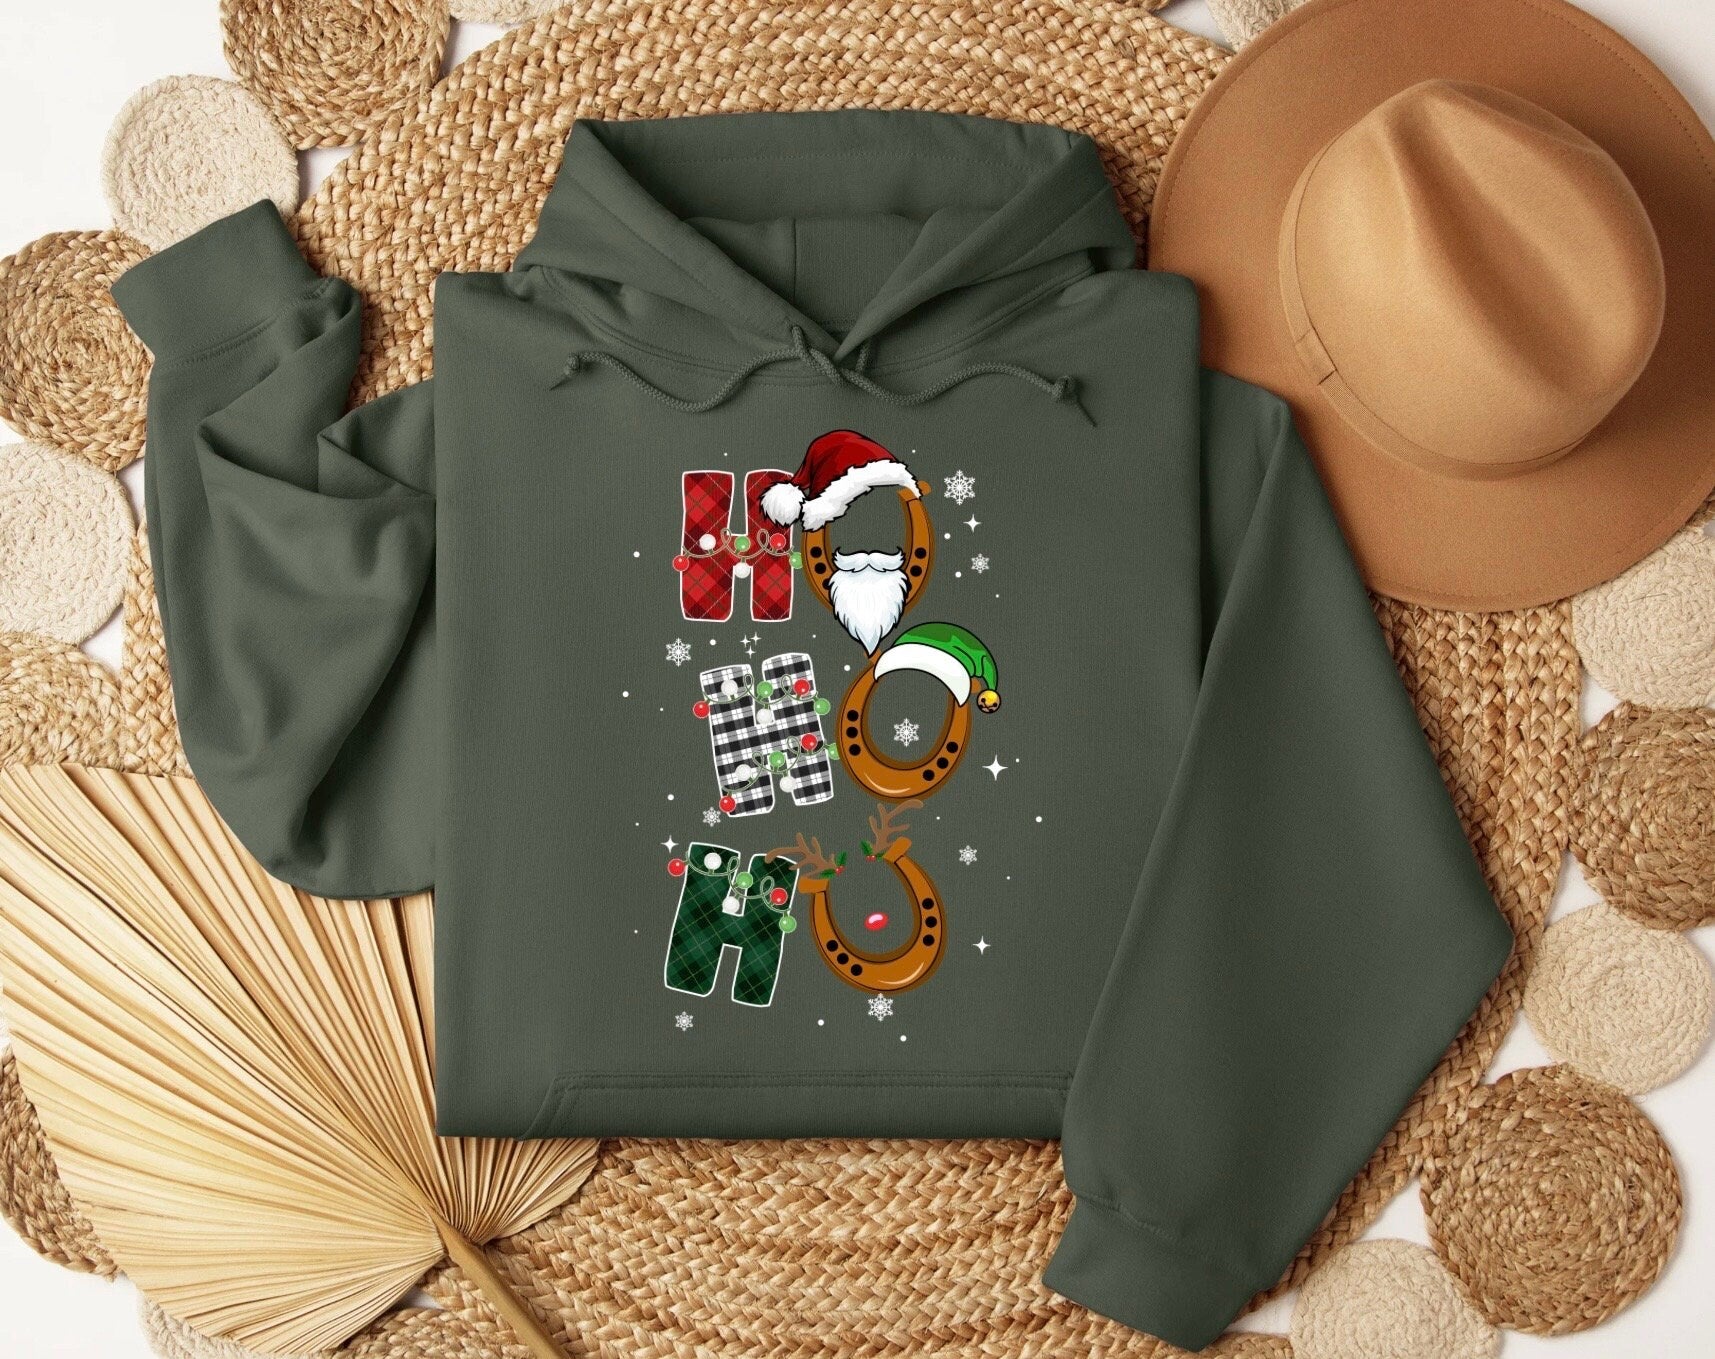 Ho ho ho Christmas Sweatshirt, Western Christmas Horse Shirt, Womens Christmas Sweater, Funny Christmas Shirt, Horse Lover,Holiday Sweater